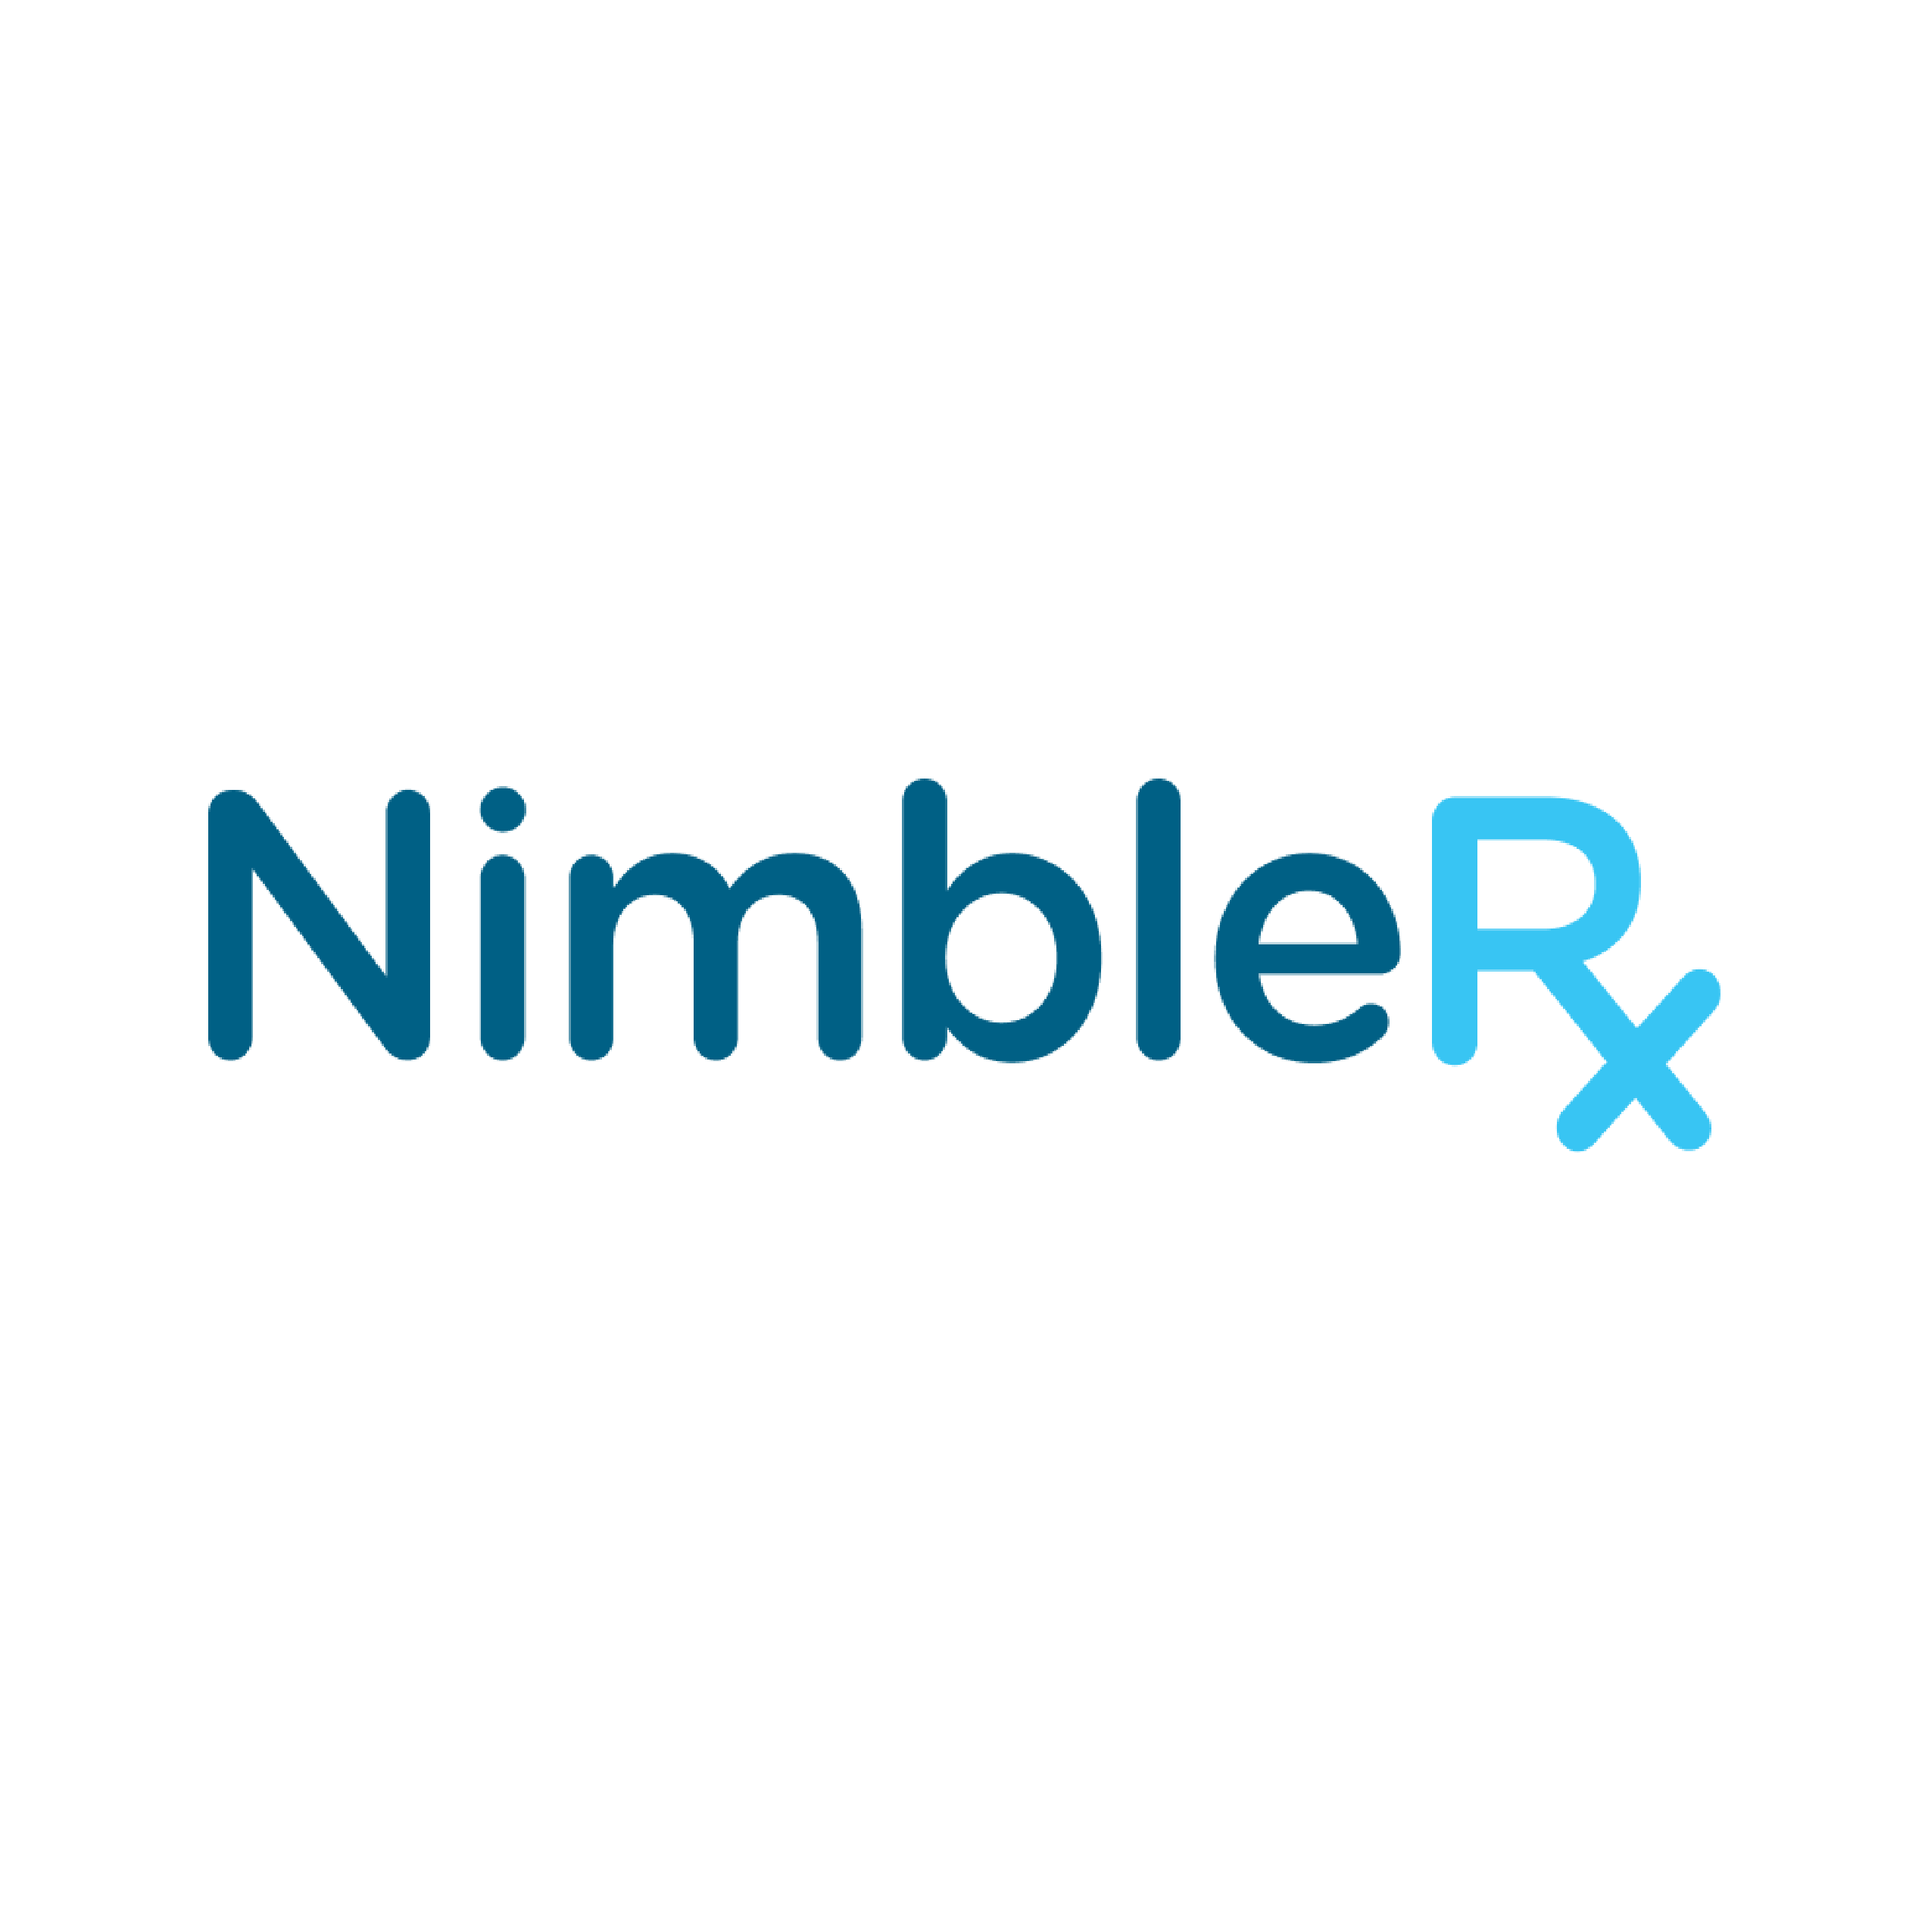 nimblerx careers